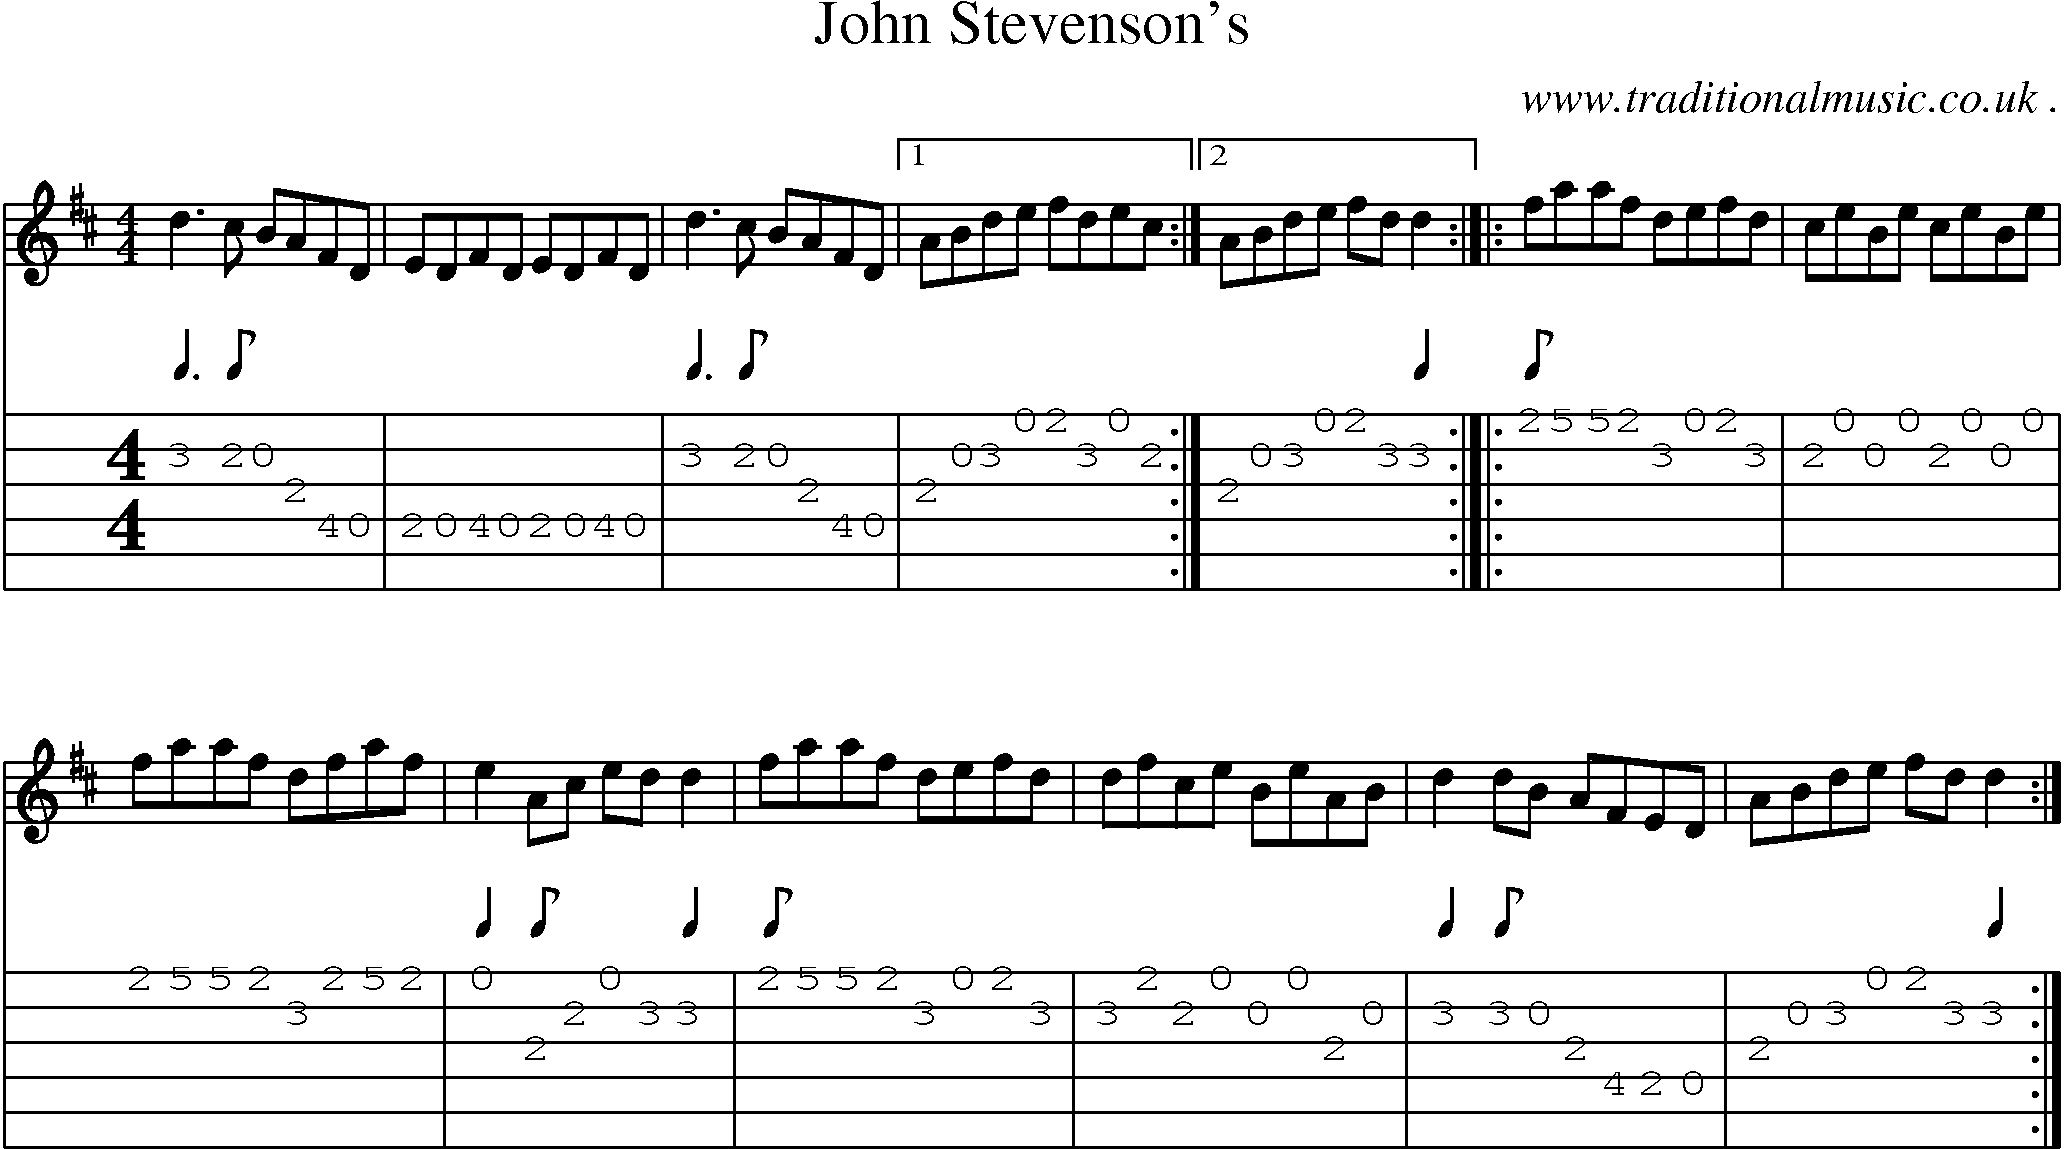 Sheet-Music and Guitar Tabs for John Stevensons